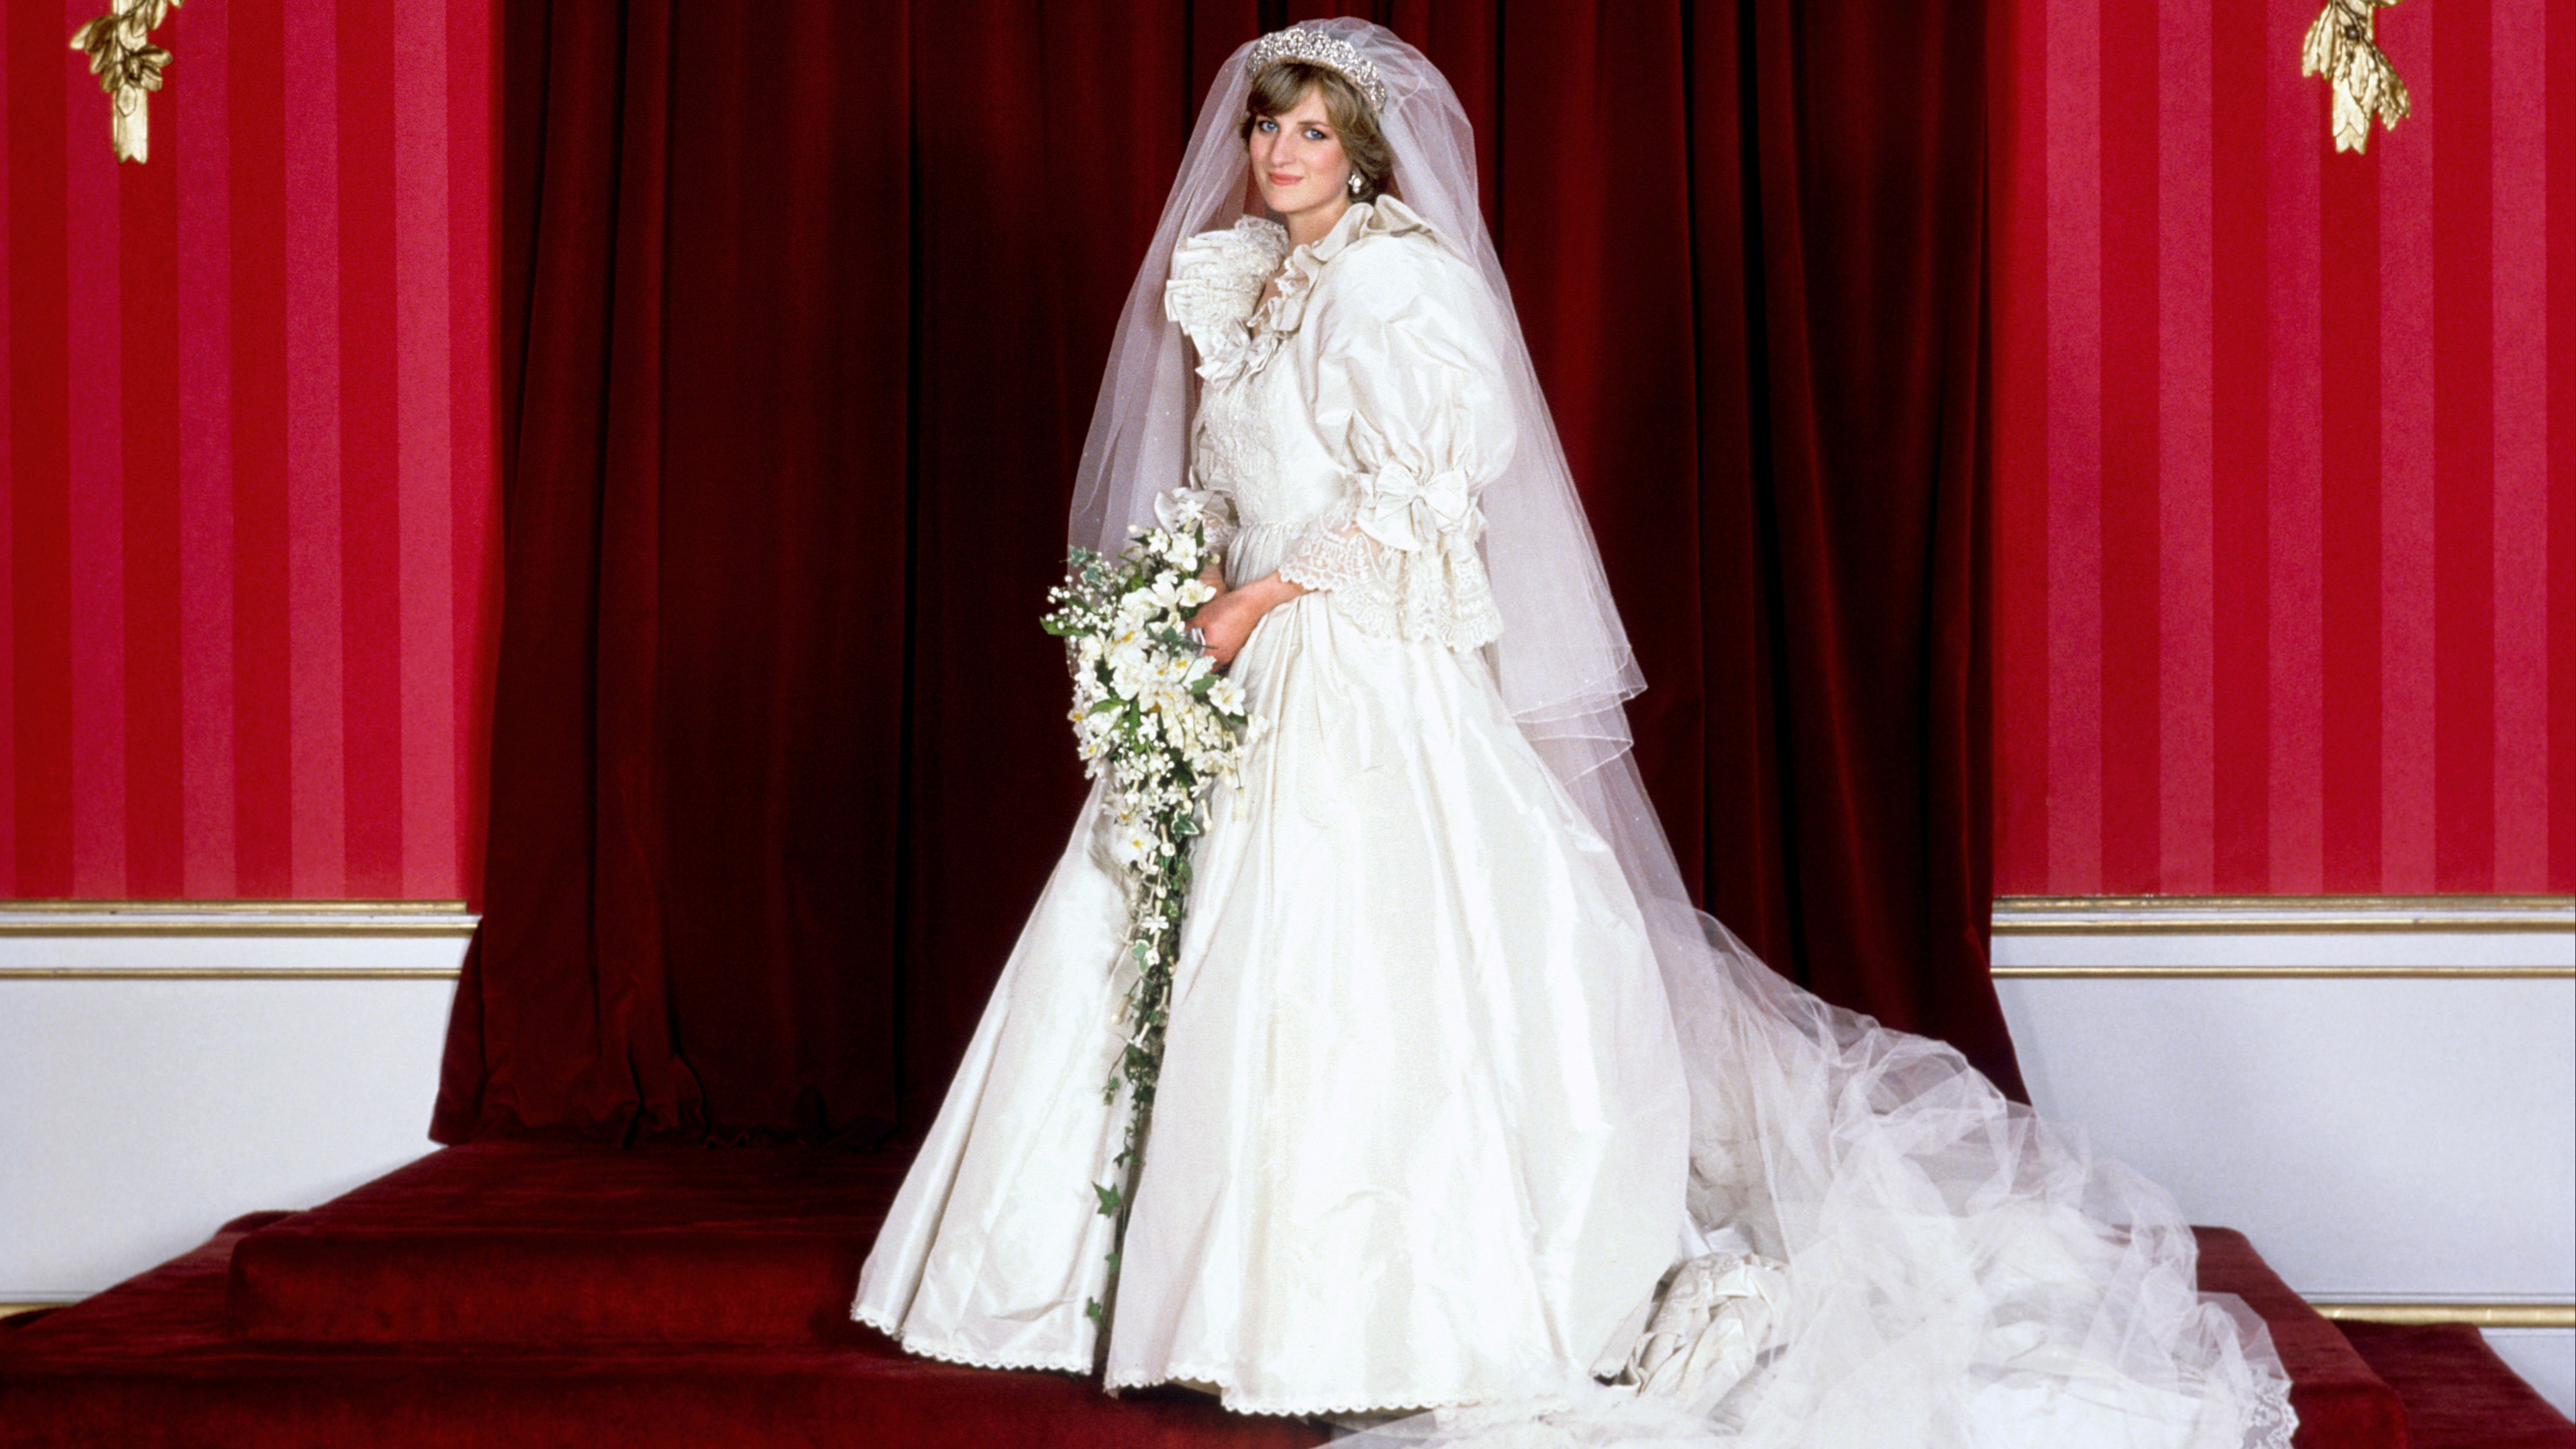 Princess Diana S Wedding Dress To Go On Display At Ke